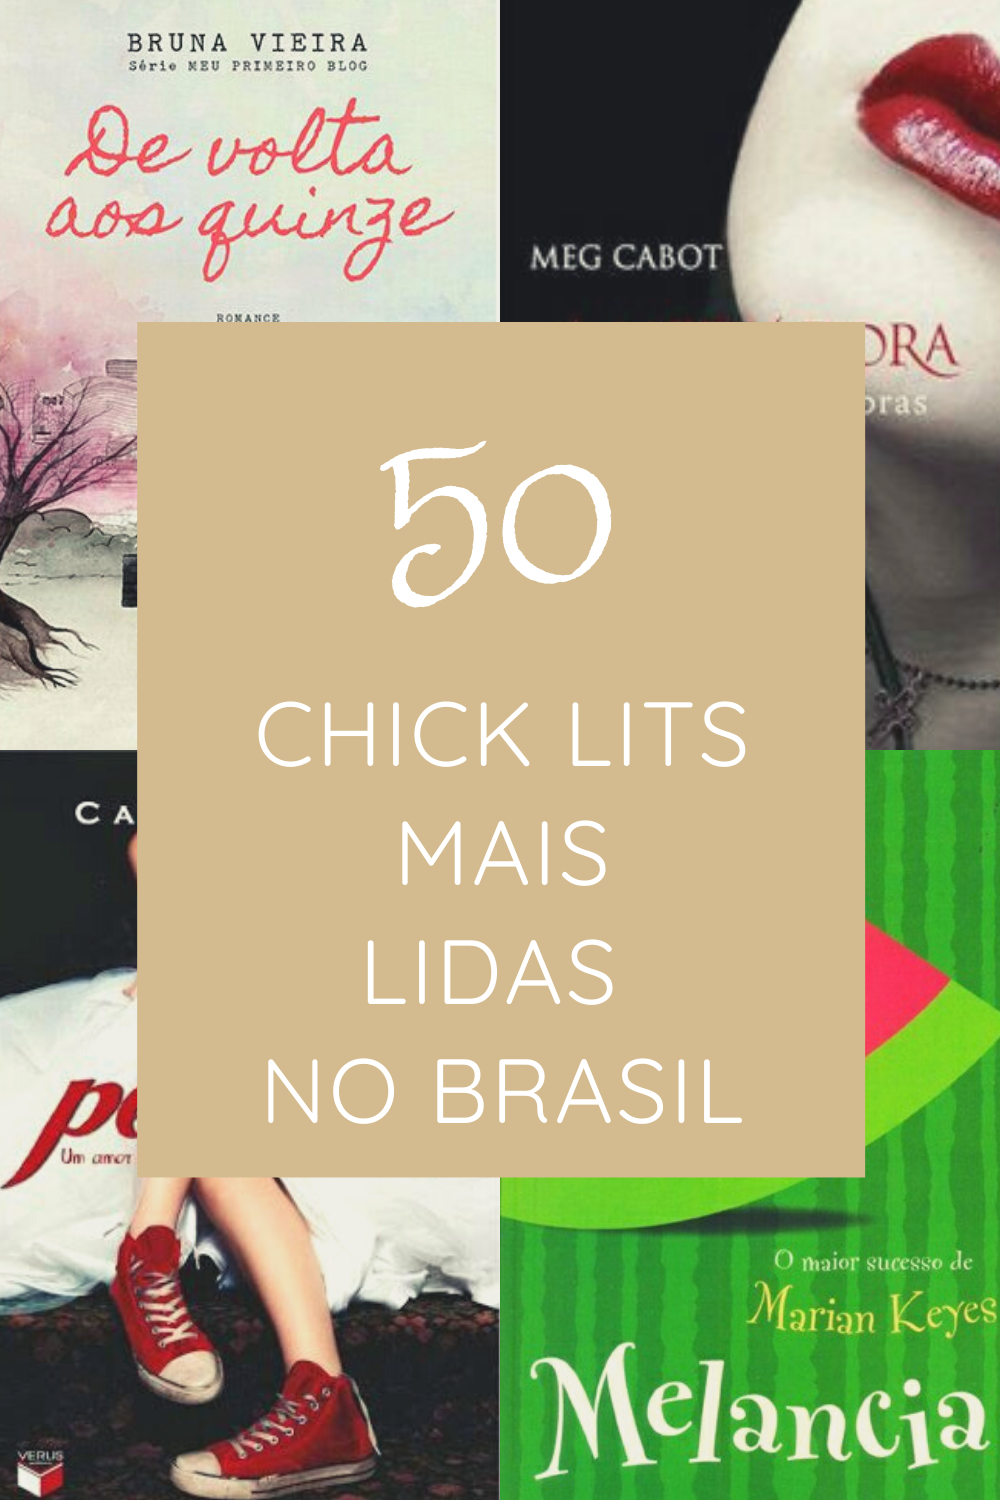 As 50 chick lits mais lidas no Brasil até agora